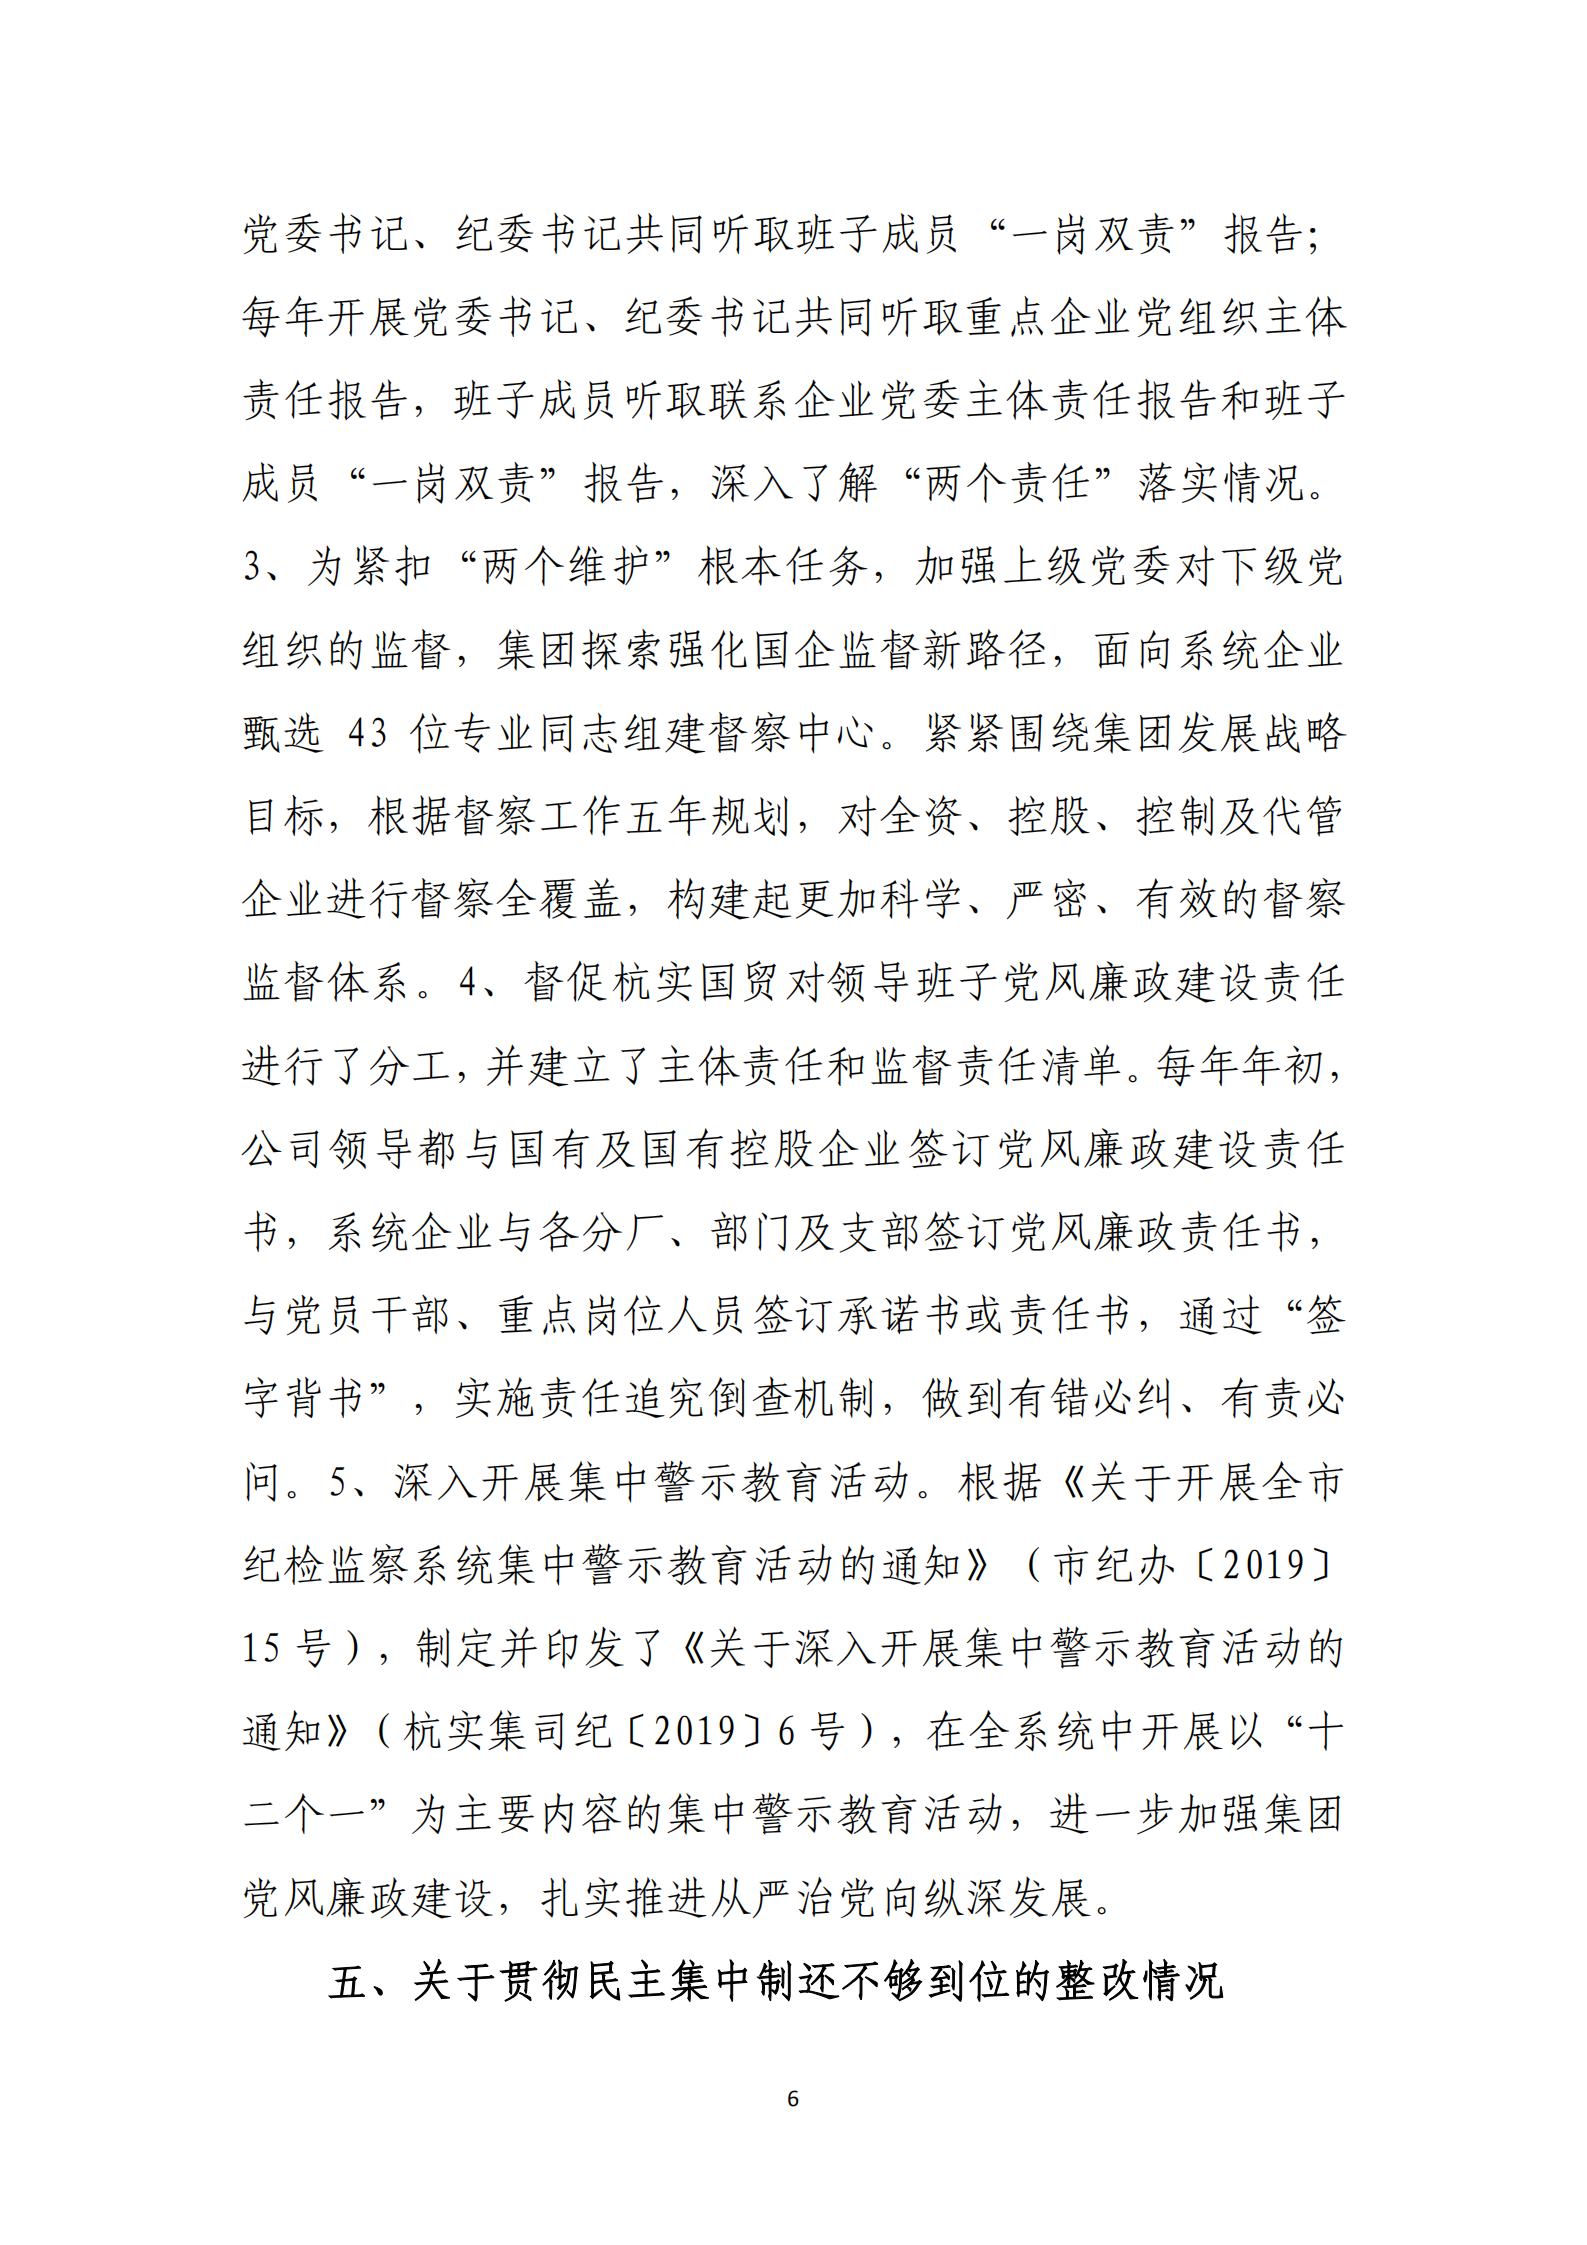 【体育365官方网站】中国有限公司党委关于巡察整改情况的通报_05.png